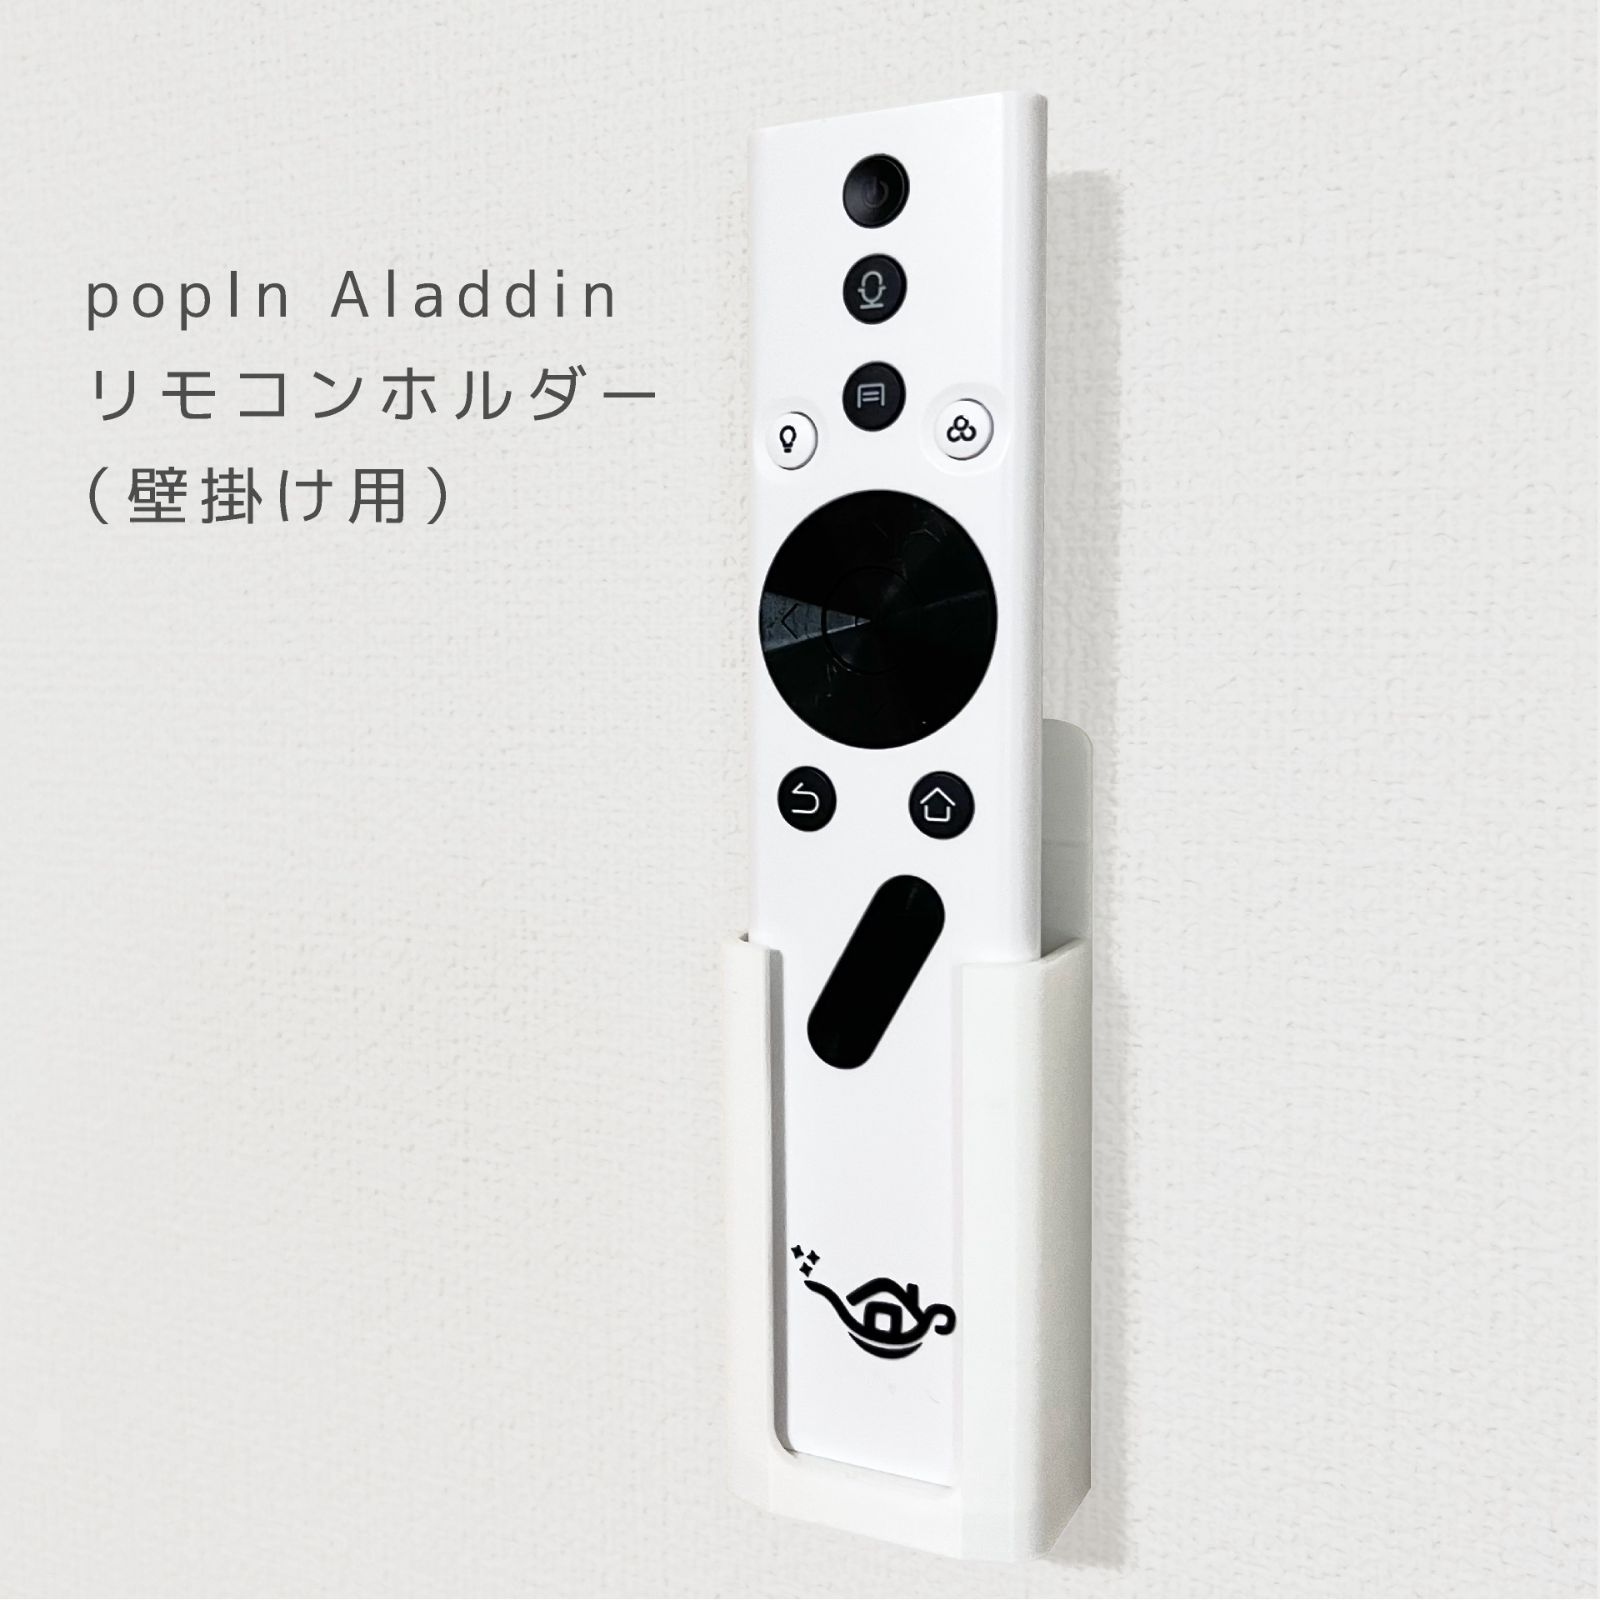 POP-IN ALADDIN 2 美品 本体・リモコン・取説付き - プロジェクター